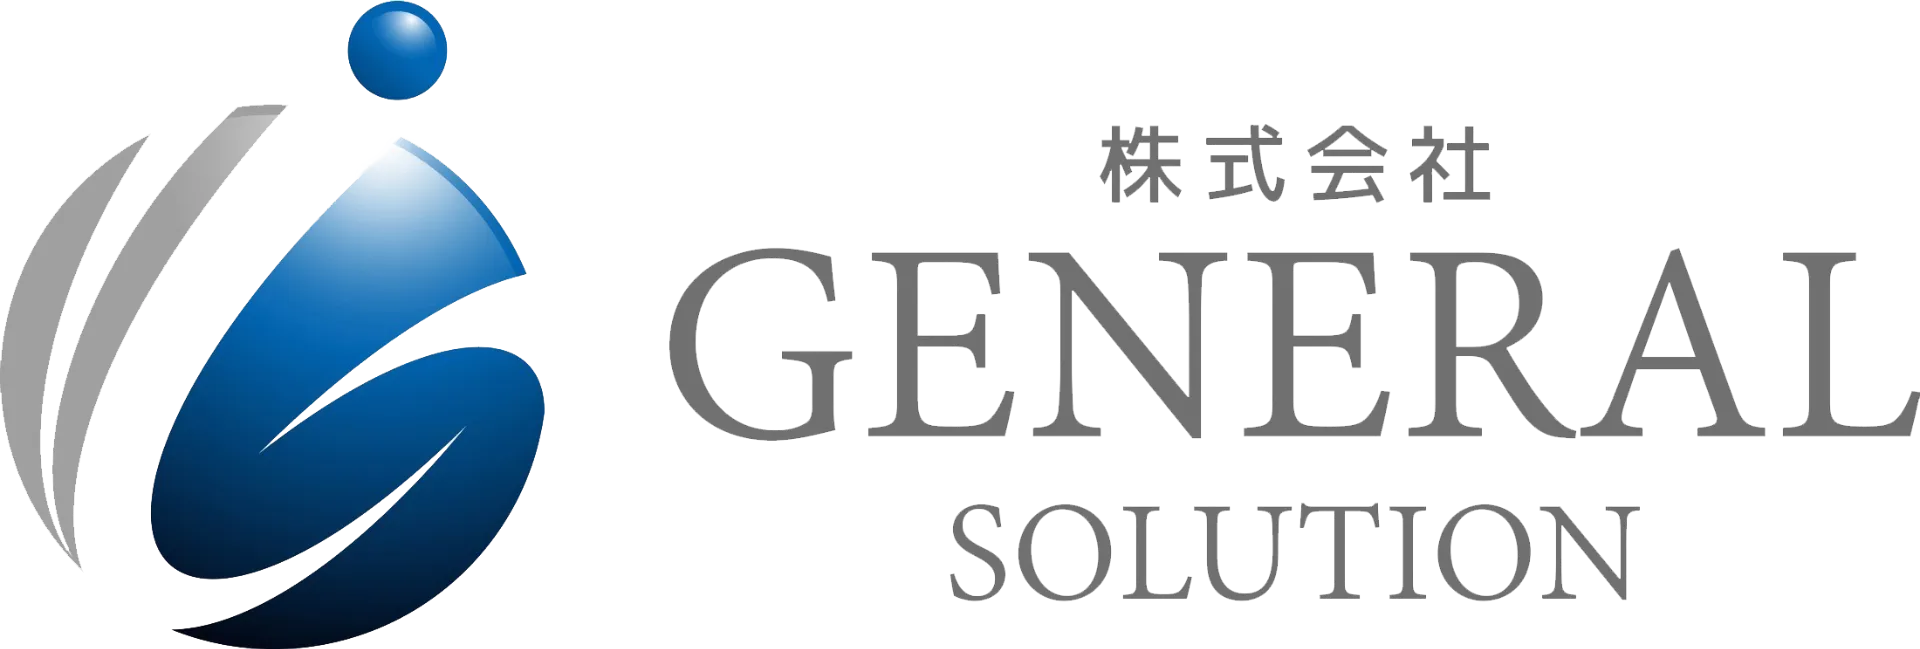 【求人】福岡で現場仕事をお探しの方、必見‼株式会社general solution